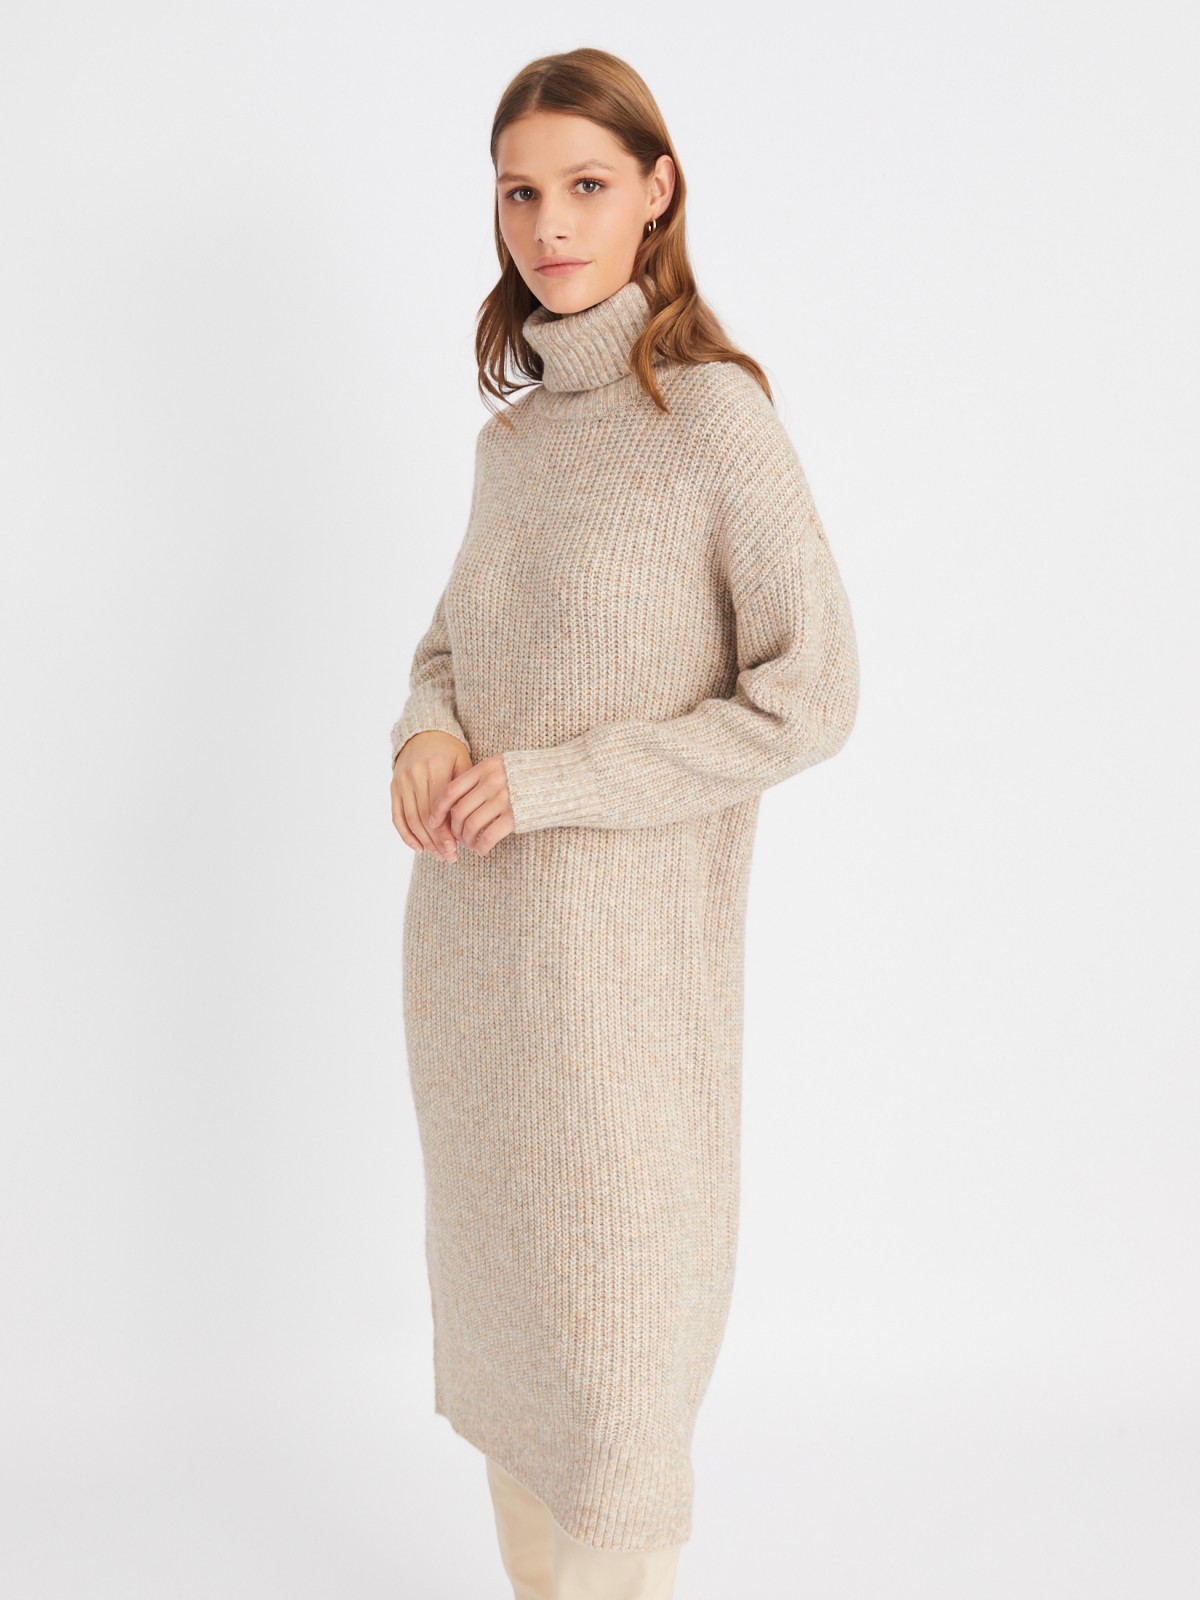 Вязаное платье-свитер длины миди с высоким горлом zolla 023428493013, цвет бежевый, размер XS